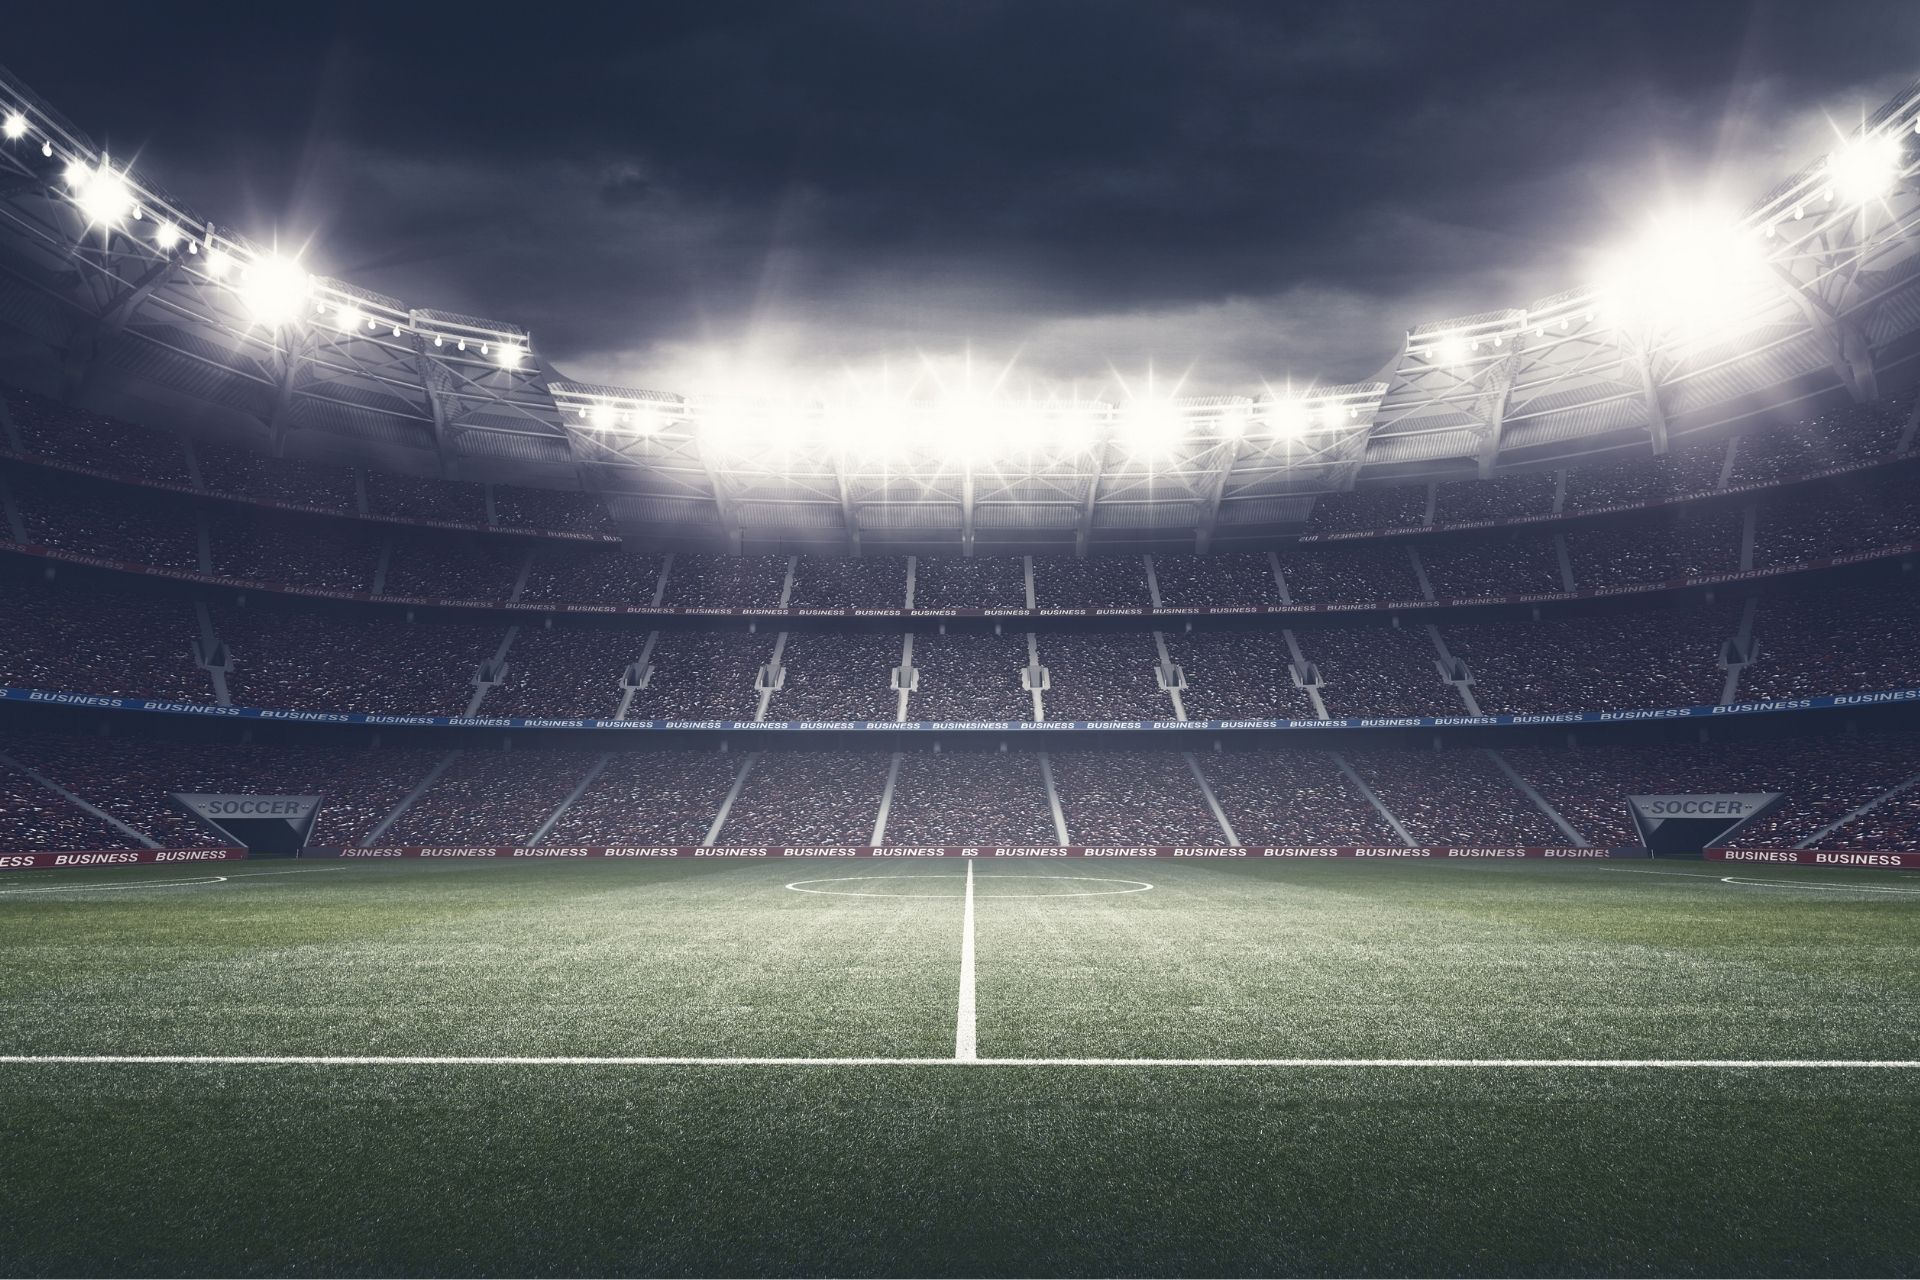 Na stadionie Estadio Benito Villamarín dnia 2022-05-07 19:00 miało miejsce spotkanie Real Betis - Barcelona zakończone wynikiem 1-2